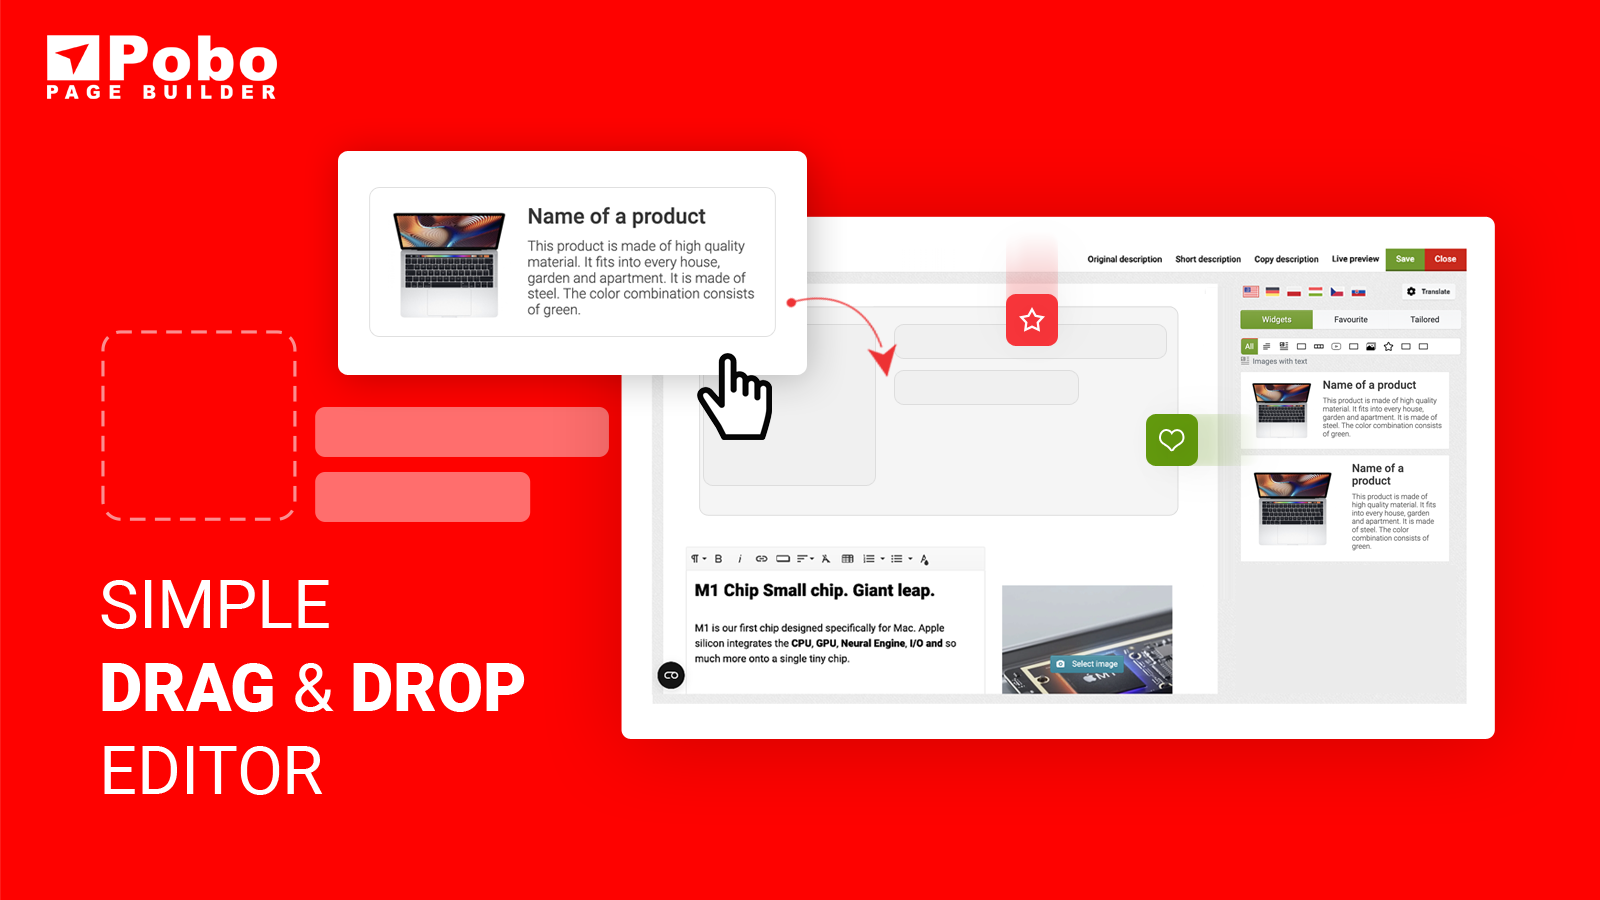 Ein einfacher Drag & Drop-Editor zur Erstellung schöner Produktseiten.